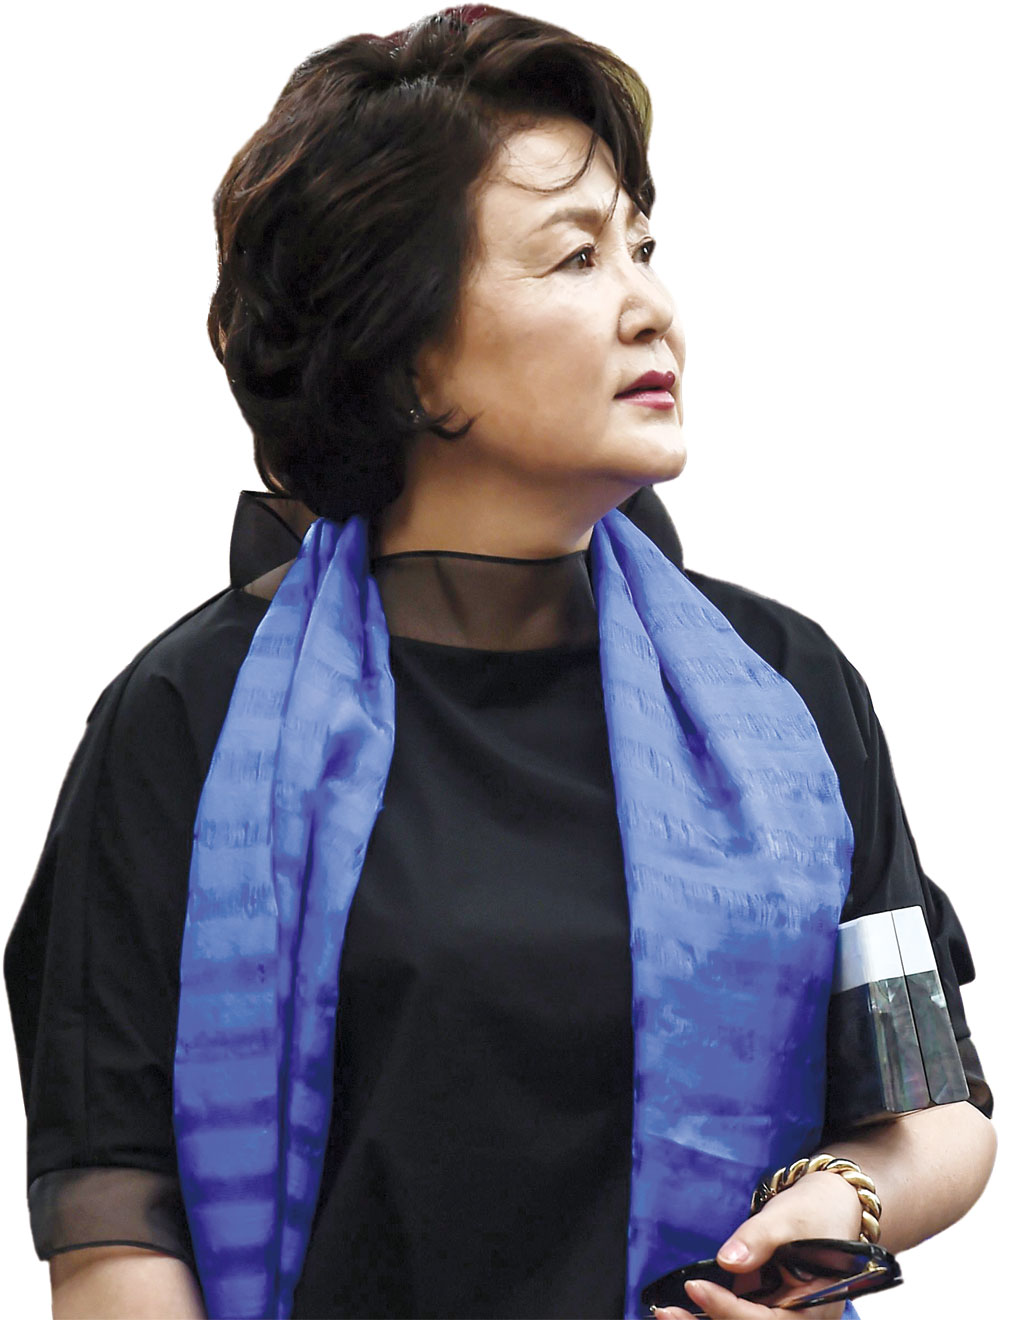 Phu nhân Tổng thống Hàn Quốc: Bà Kim Jung-sook thân thiện